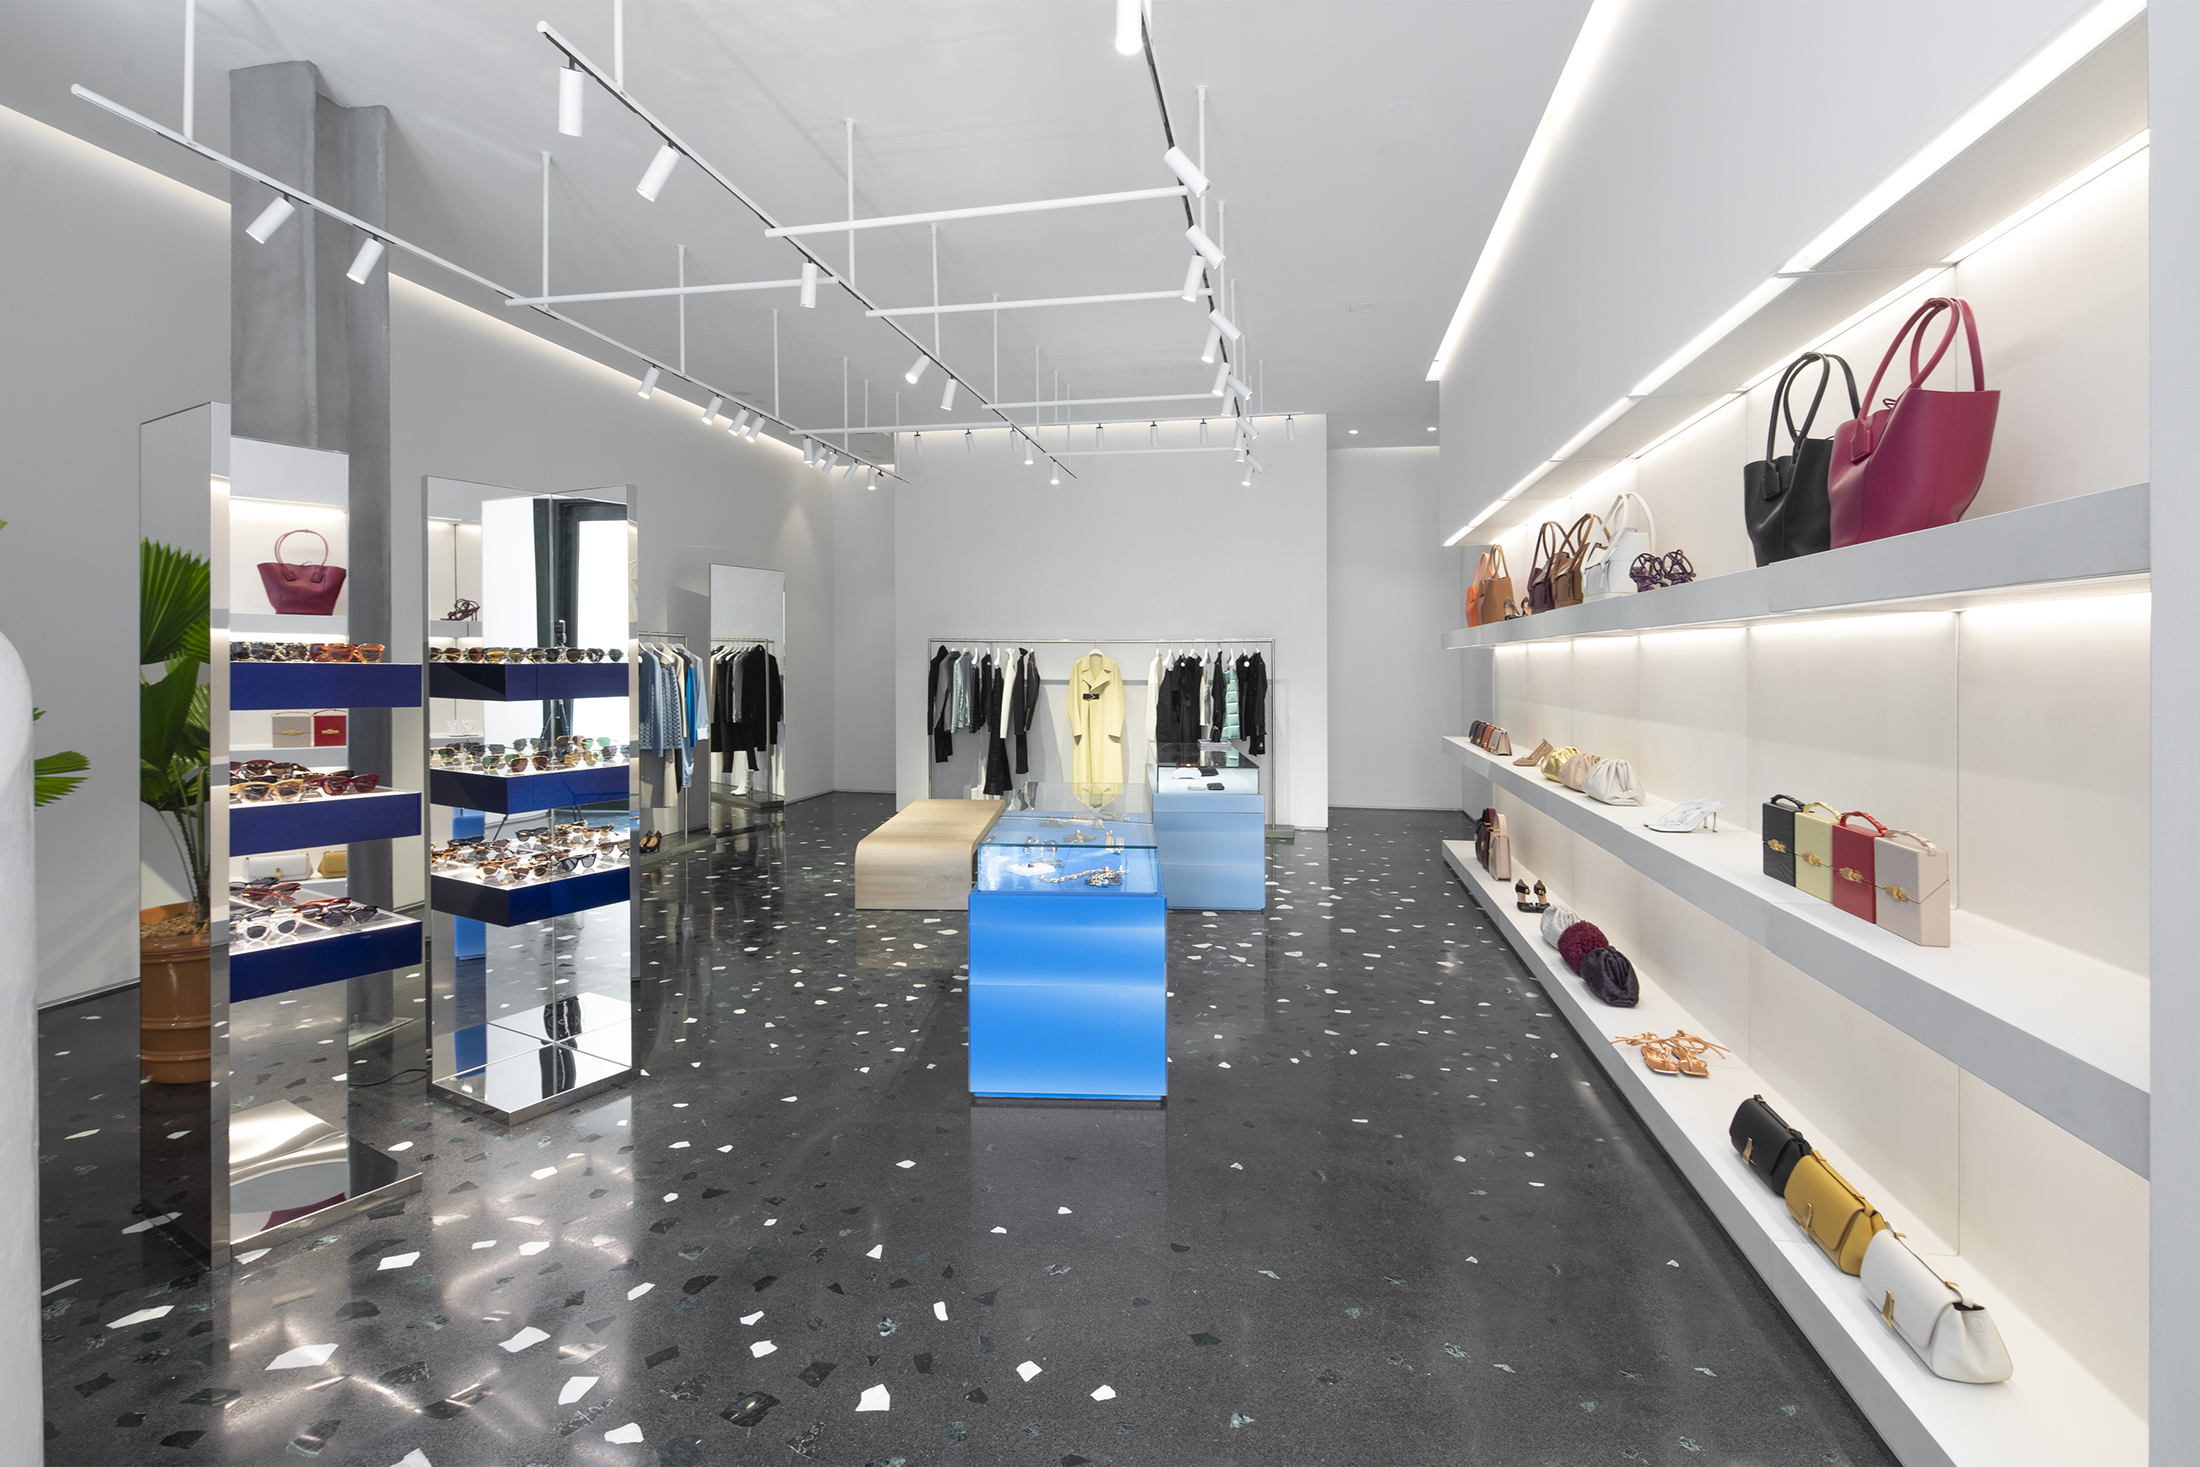 Bottega Veneta opens first Miami store